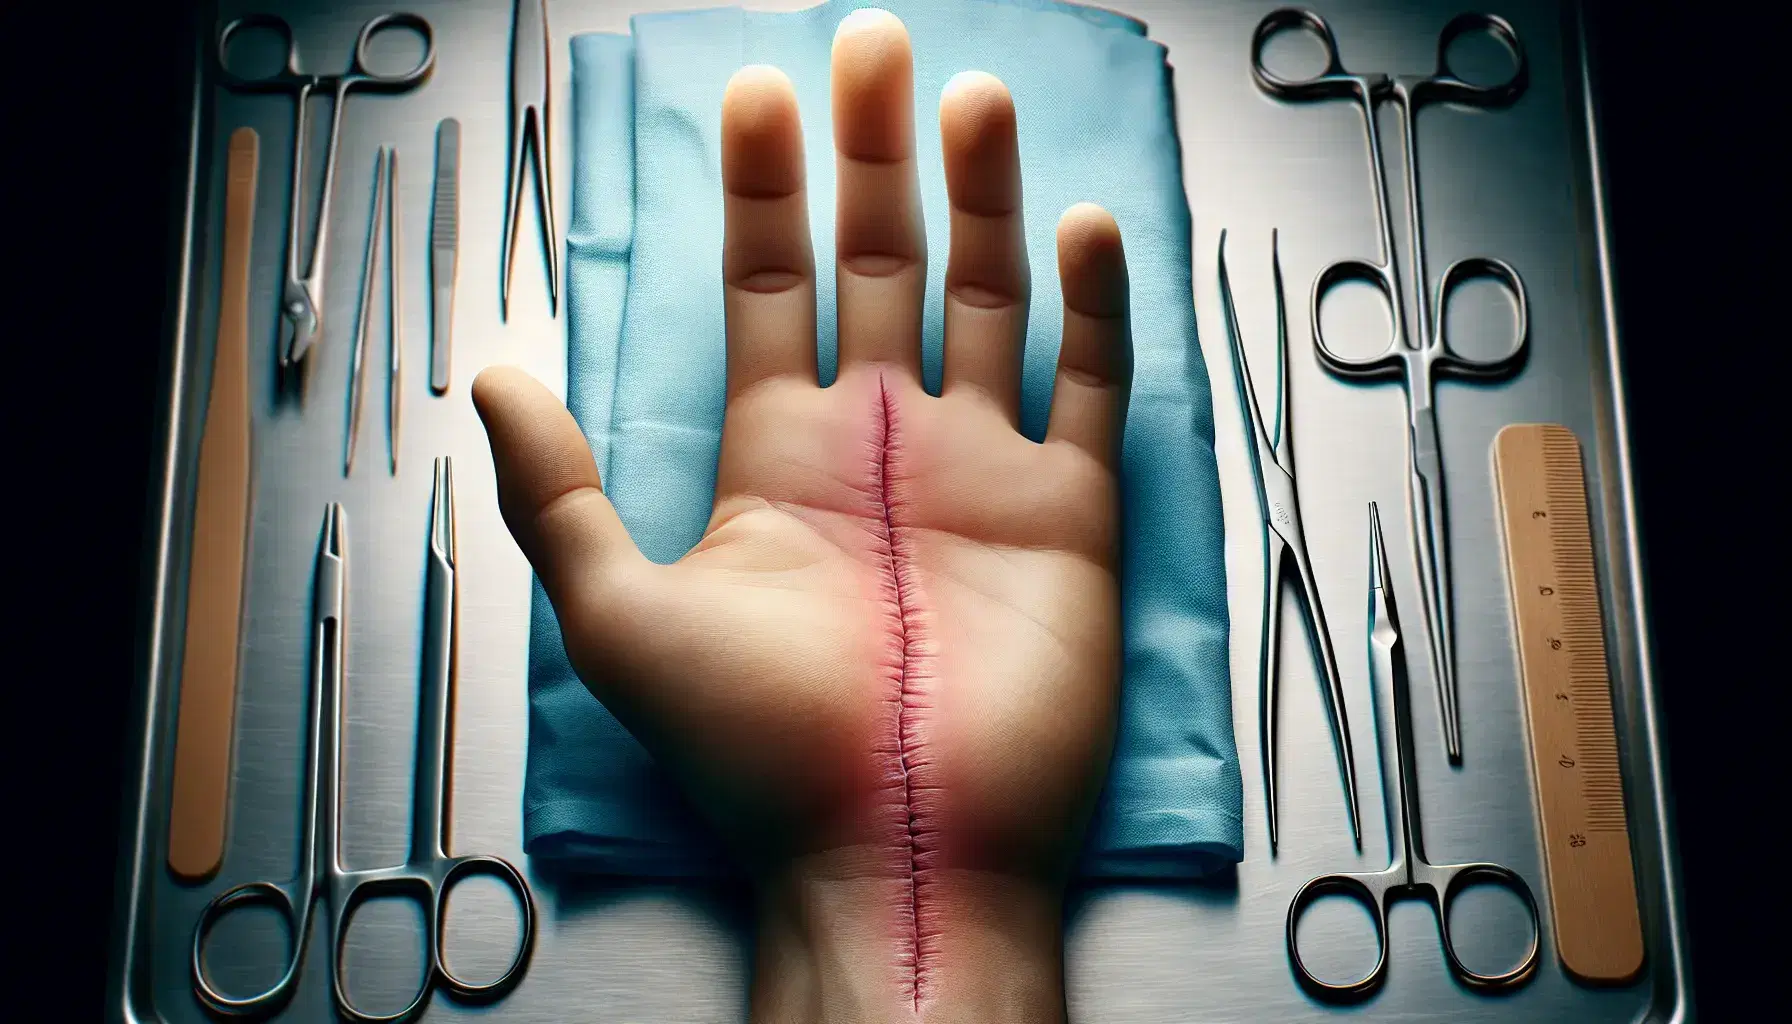 Mano humana mostrando cicatriz reciente con instrumentos médicos y guantes quirúrgicos en segundo plano, destacando higiene y cuidado postoperatorio.